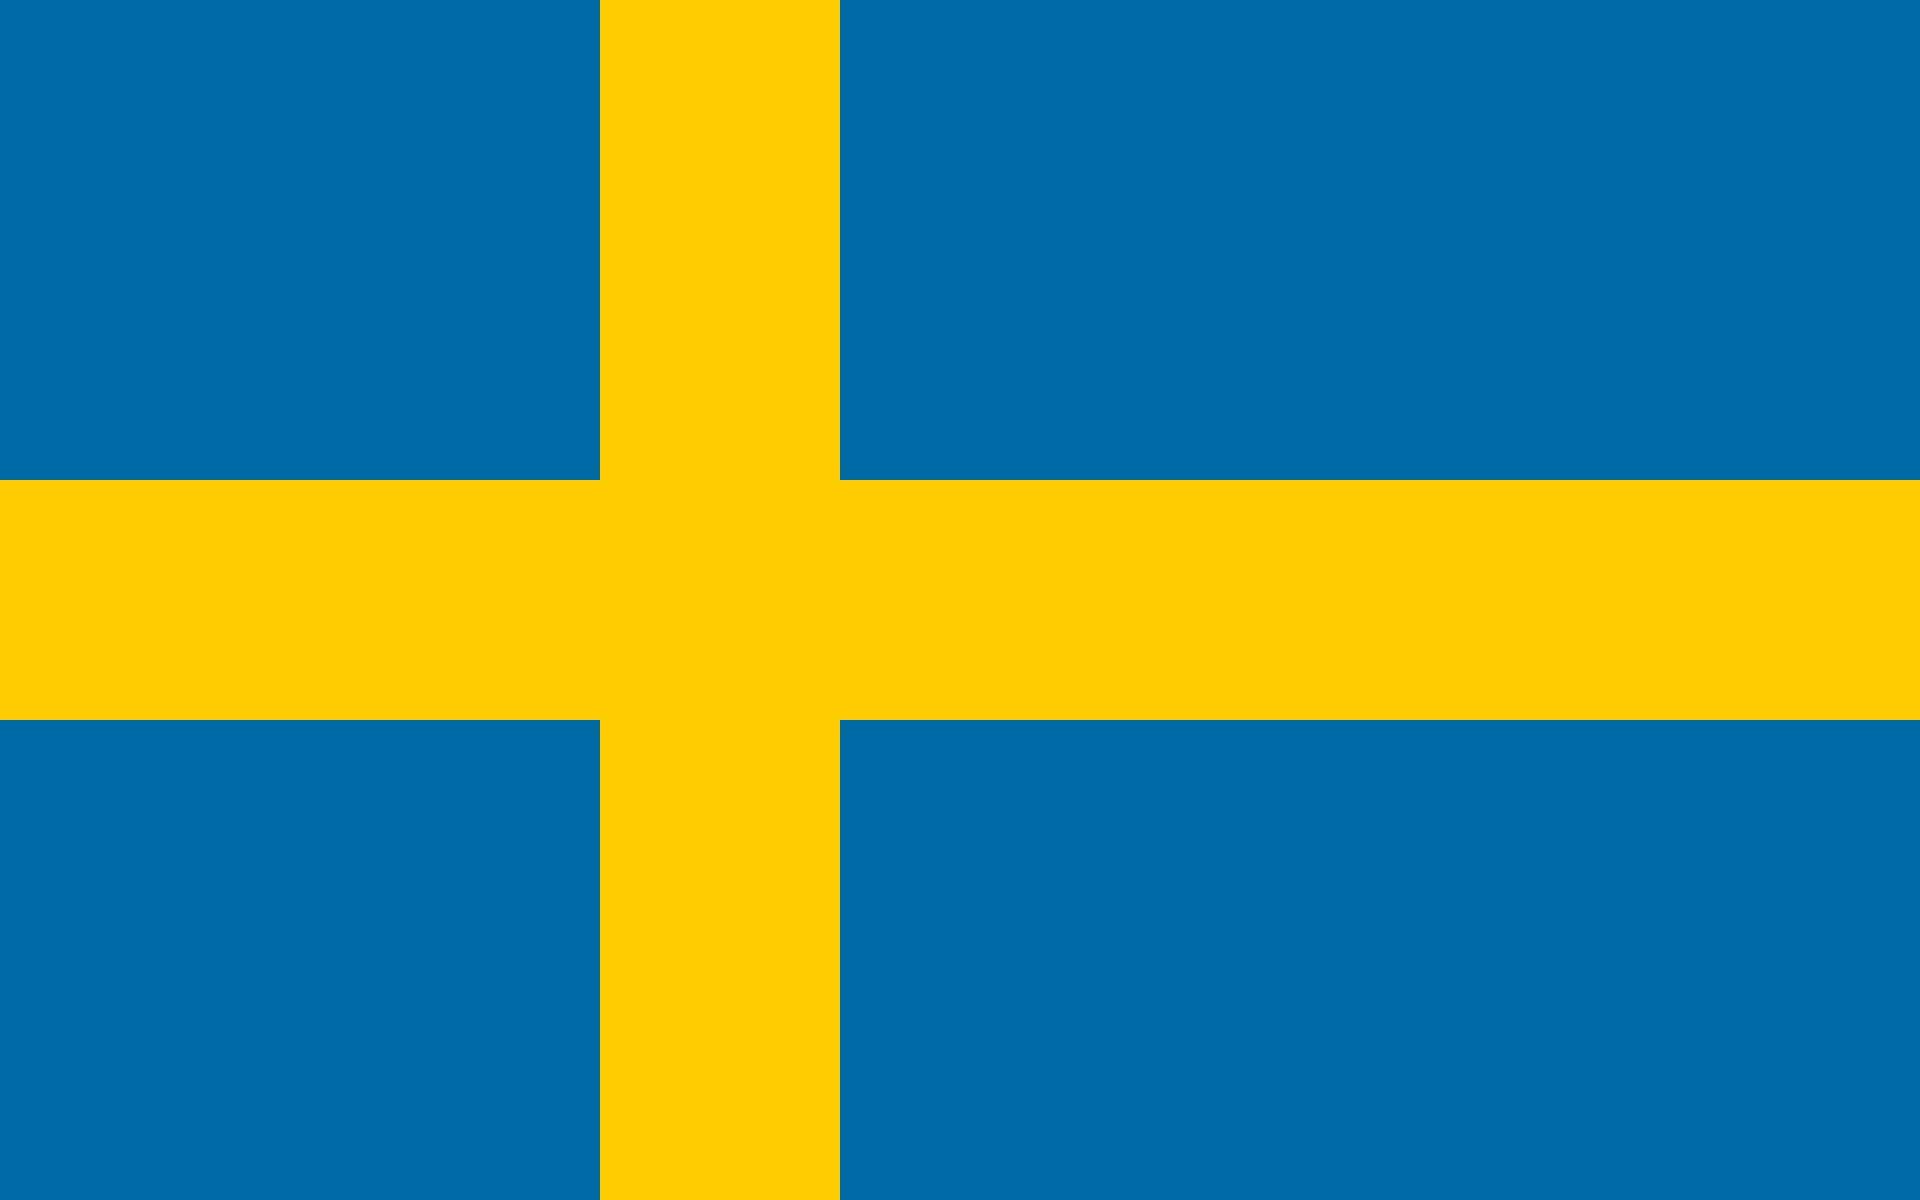 スウェーデン国旗の色の意味とは？